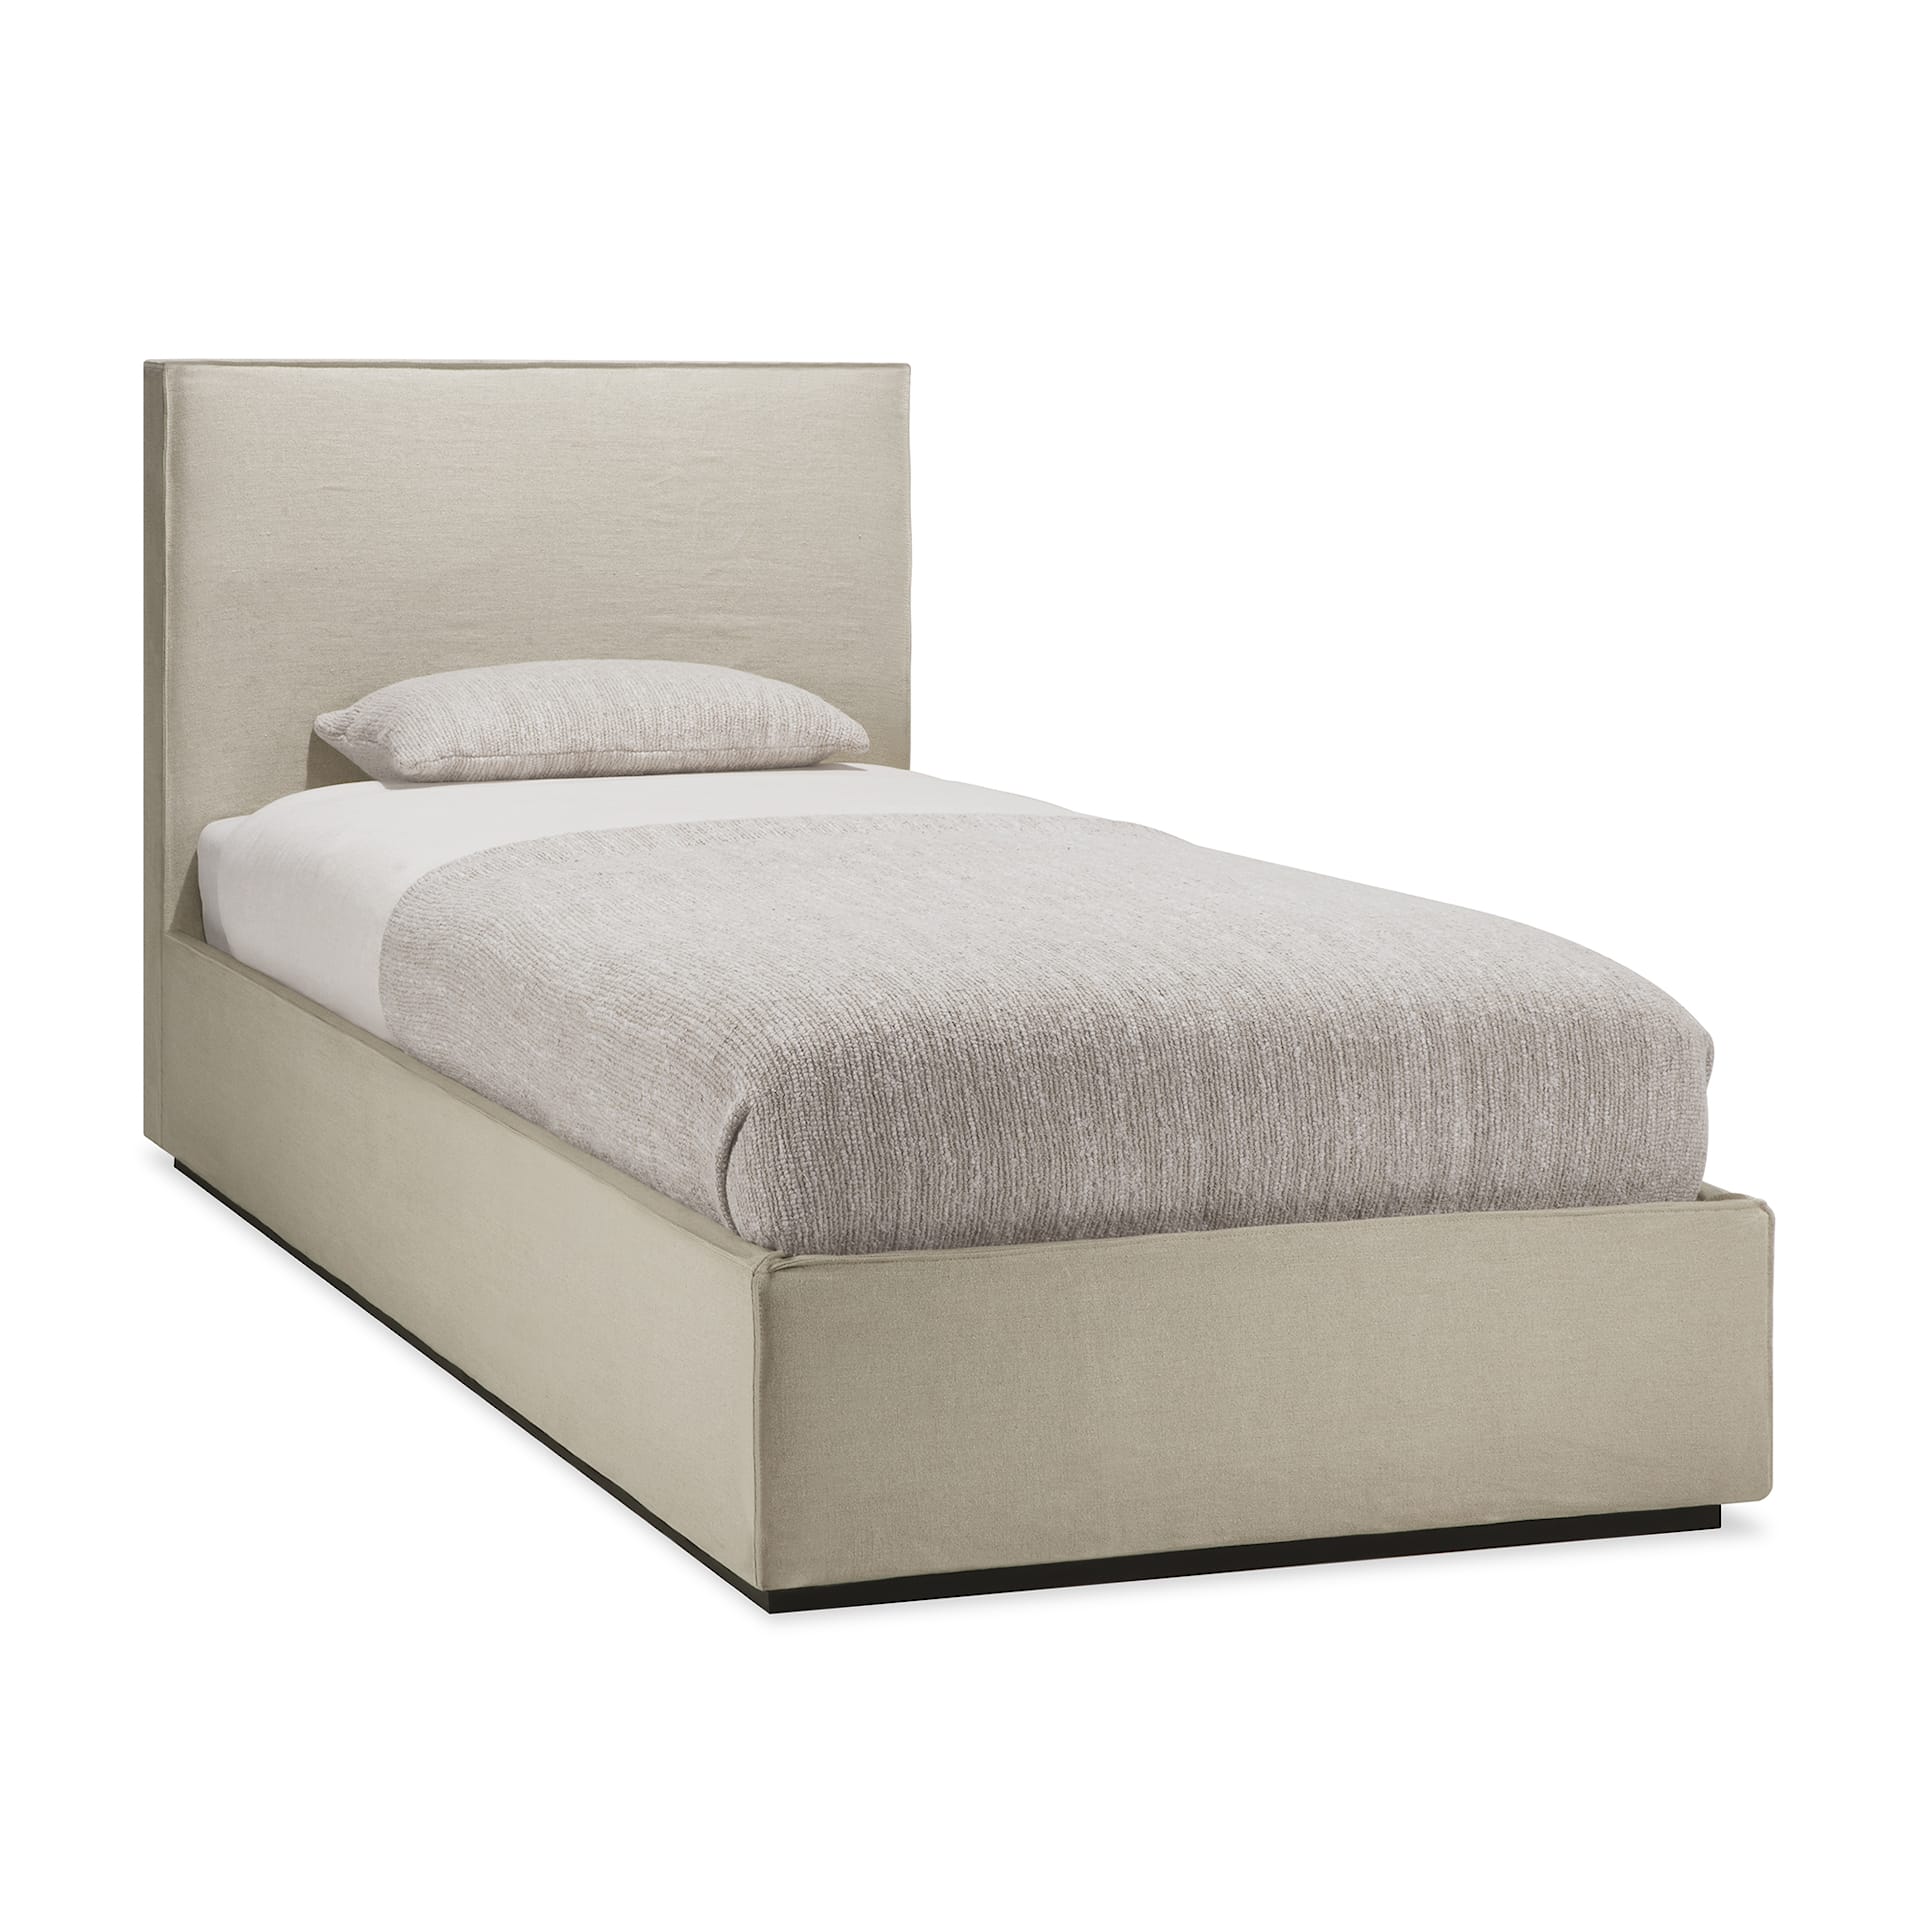 Revive Bed 90 x 200 cm - Ethnicraft - NO GA